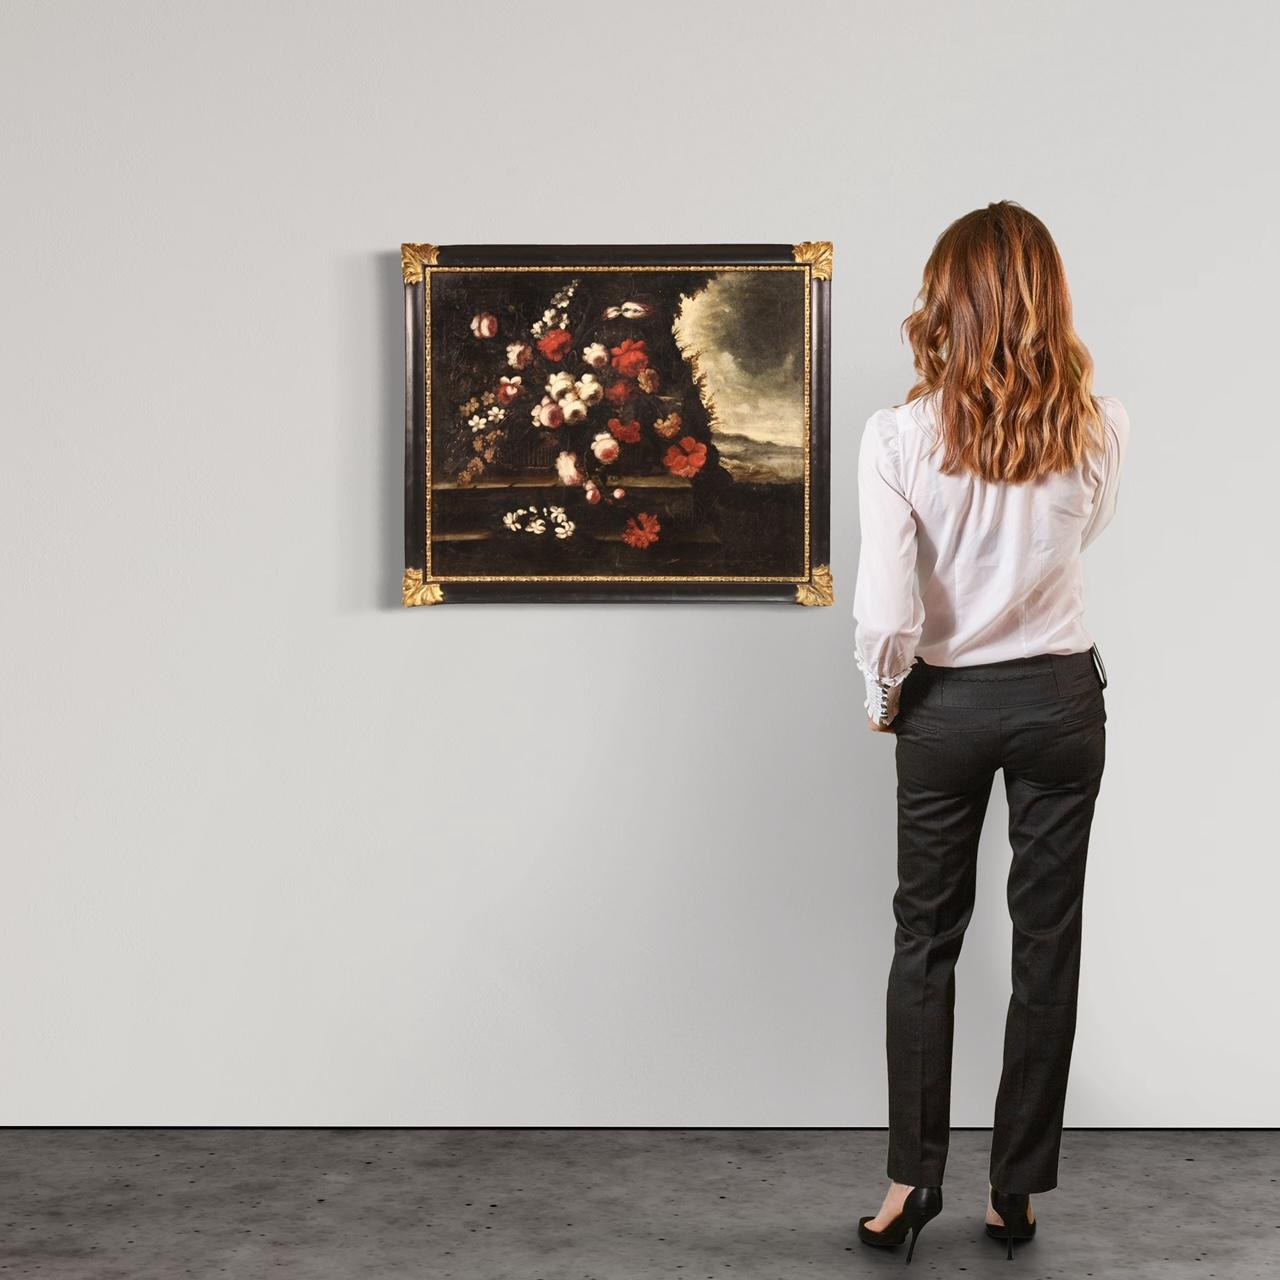 Peinture italienne ancienne du début du 18e siècle. Oeuvre d'art à l'huile sur toile représentant une fabuleuse nature morte avec des fleurs et une vue à l'arrière-plan (à droite) d'une excellente qualité picturale. cadre en bois du 20e siècle